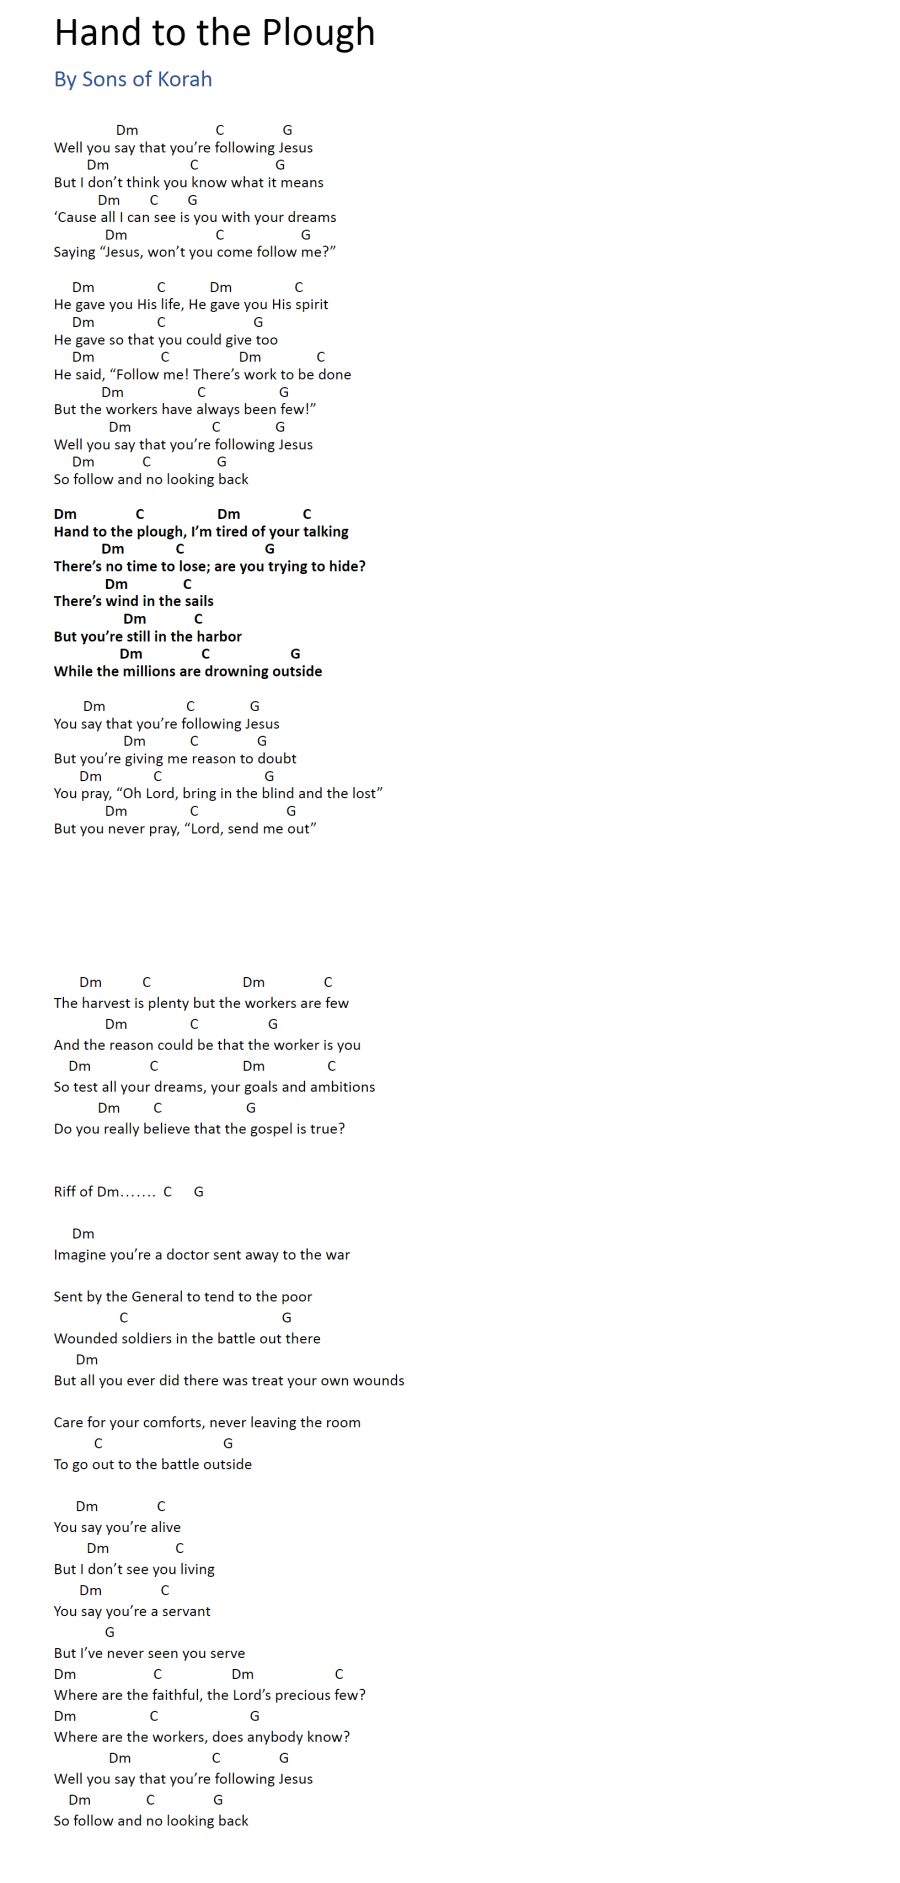 god hand - song and lyrics by Yotora, Yunyakosva